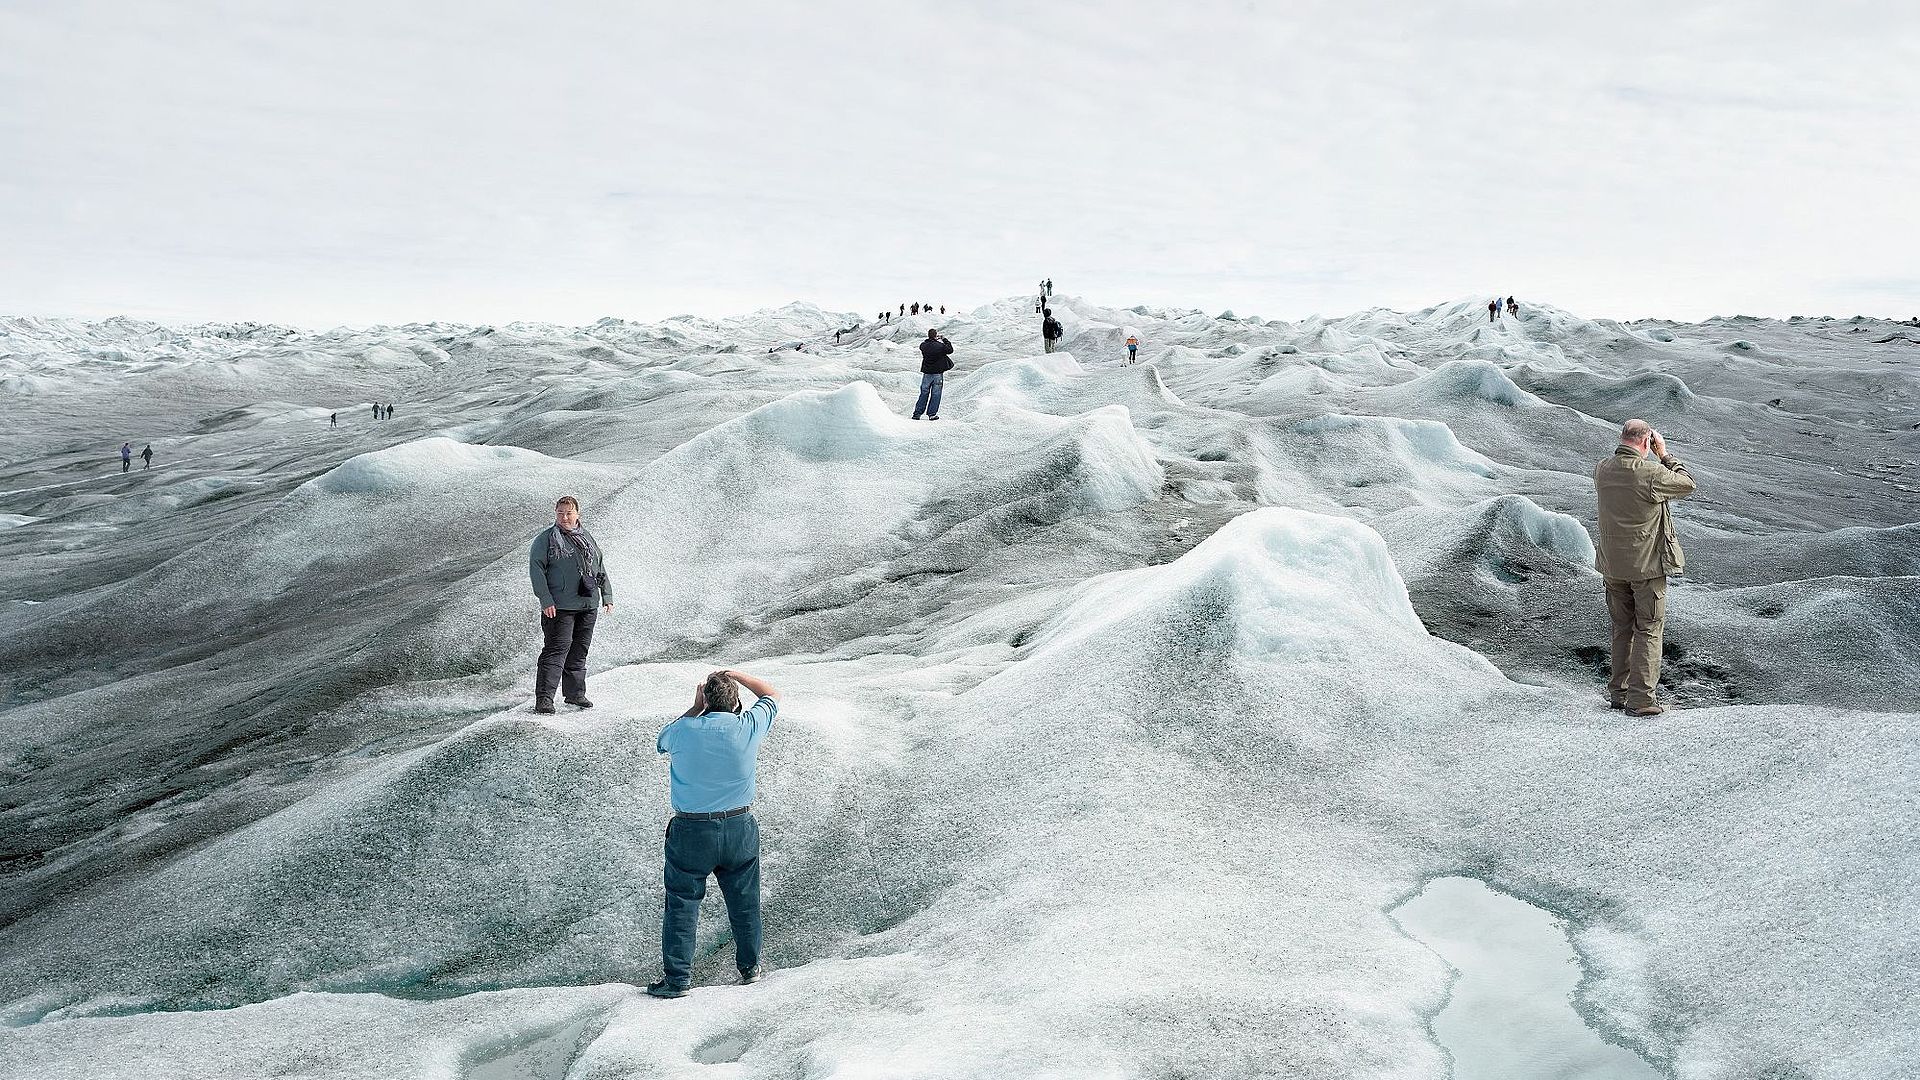 Eine Gruppe von Touristinnen und Touristen steht auf einer schmelzenden Eislandschaft und posiert an verschiedenen Punkten des Bildes für Fotos. An vielen Stellen der Eislandschaft hat sich schwarzer Ruß abgesetzt, das Eis ist dort sehr dunkel. Im Vordergrund ist eine große Pfütze aus Schmelzwasser.